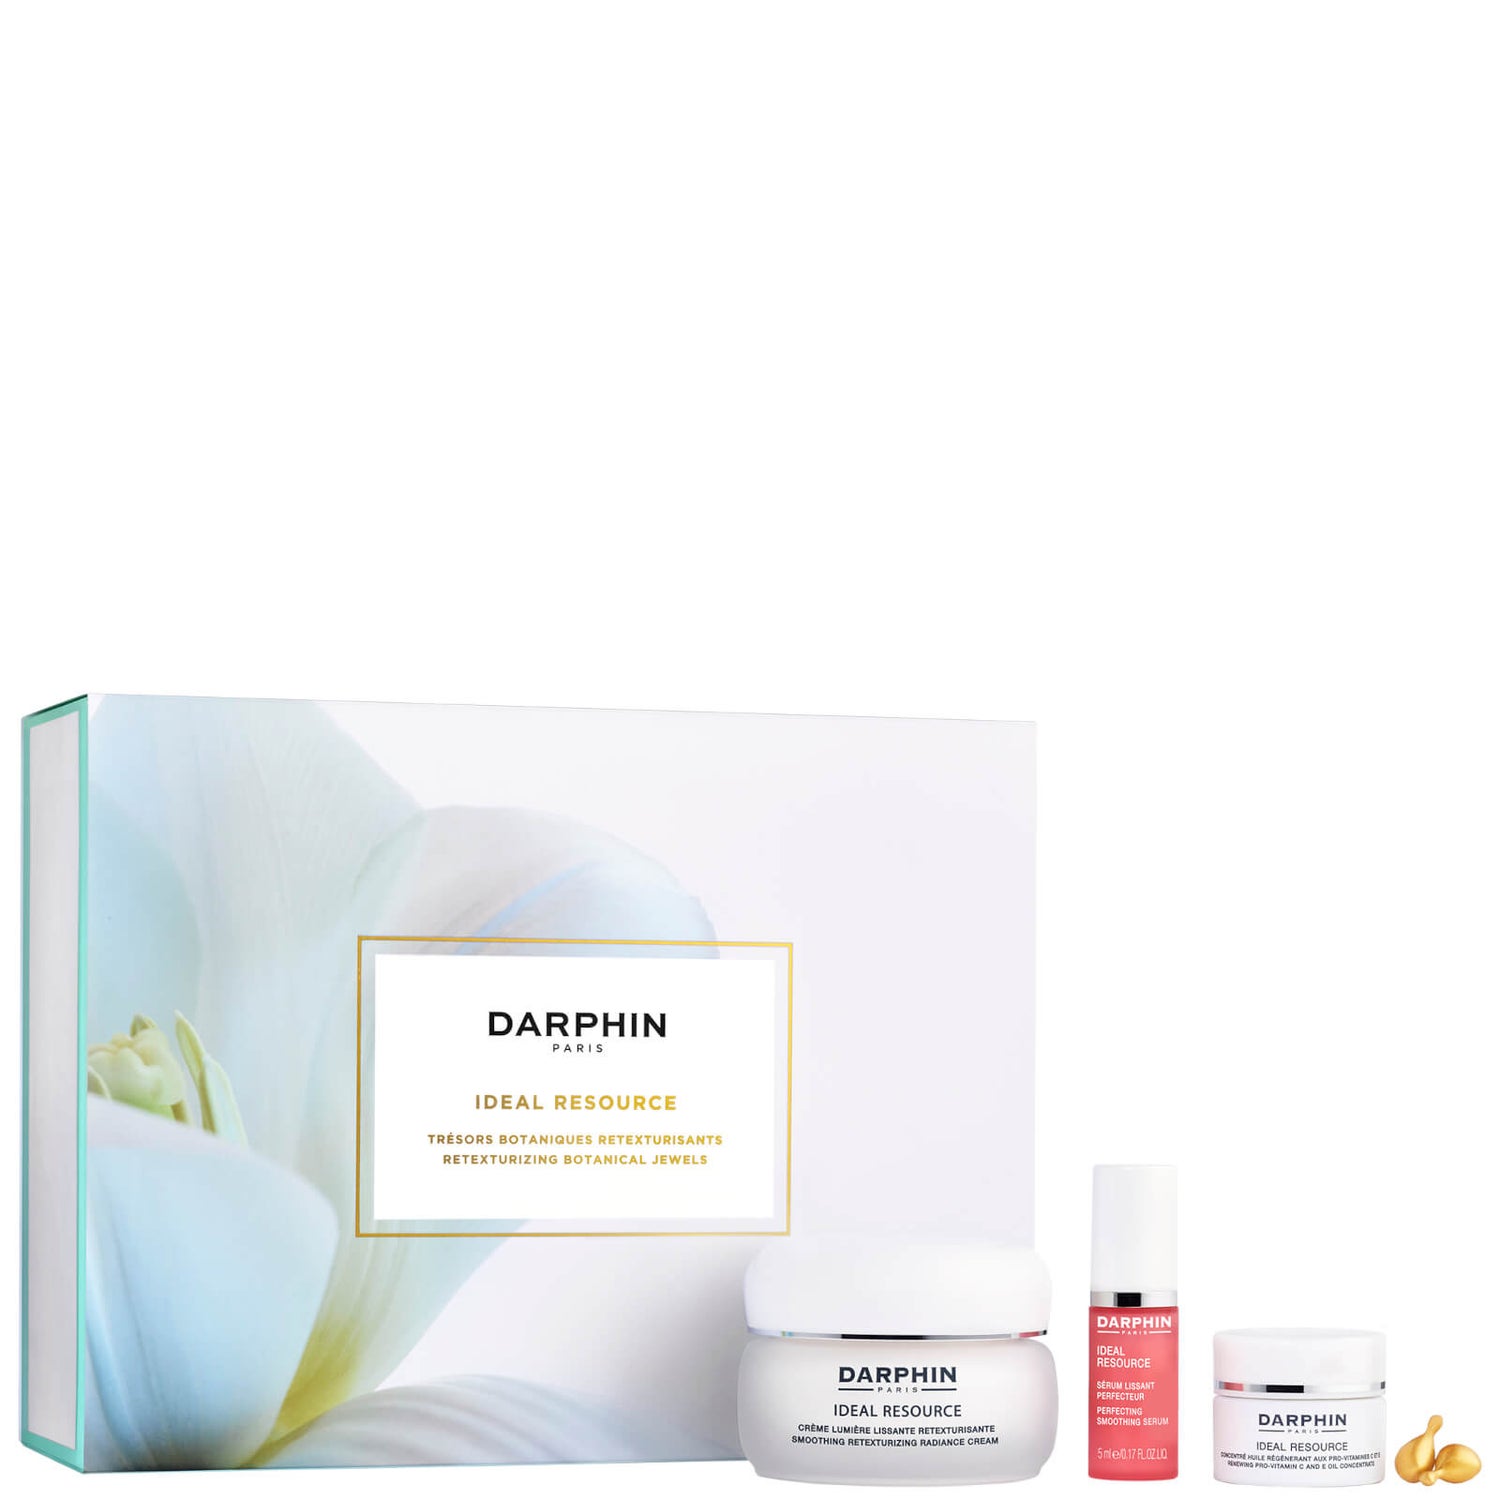 Darphin Ideal Resource Radiance Cream - Vakantie (ter waarde van €82,00)